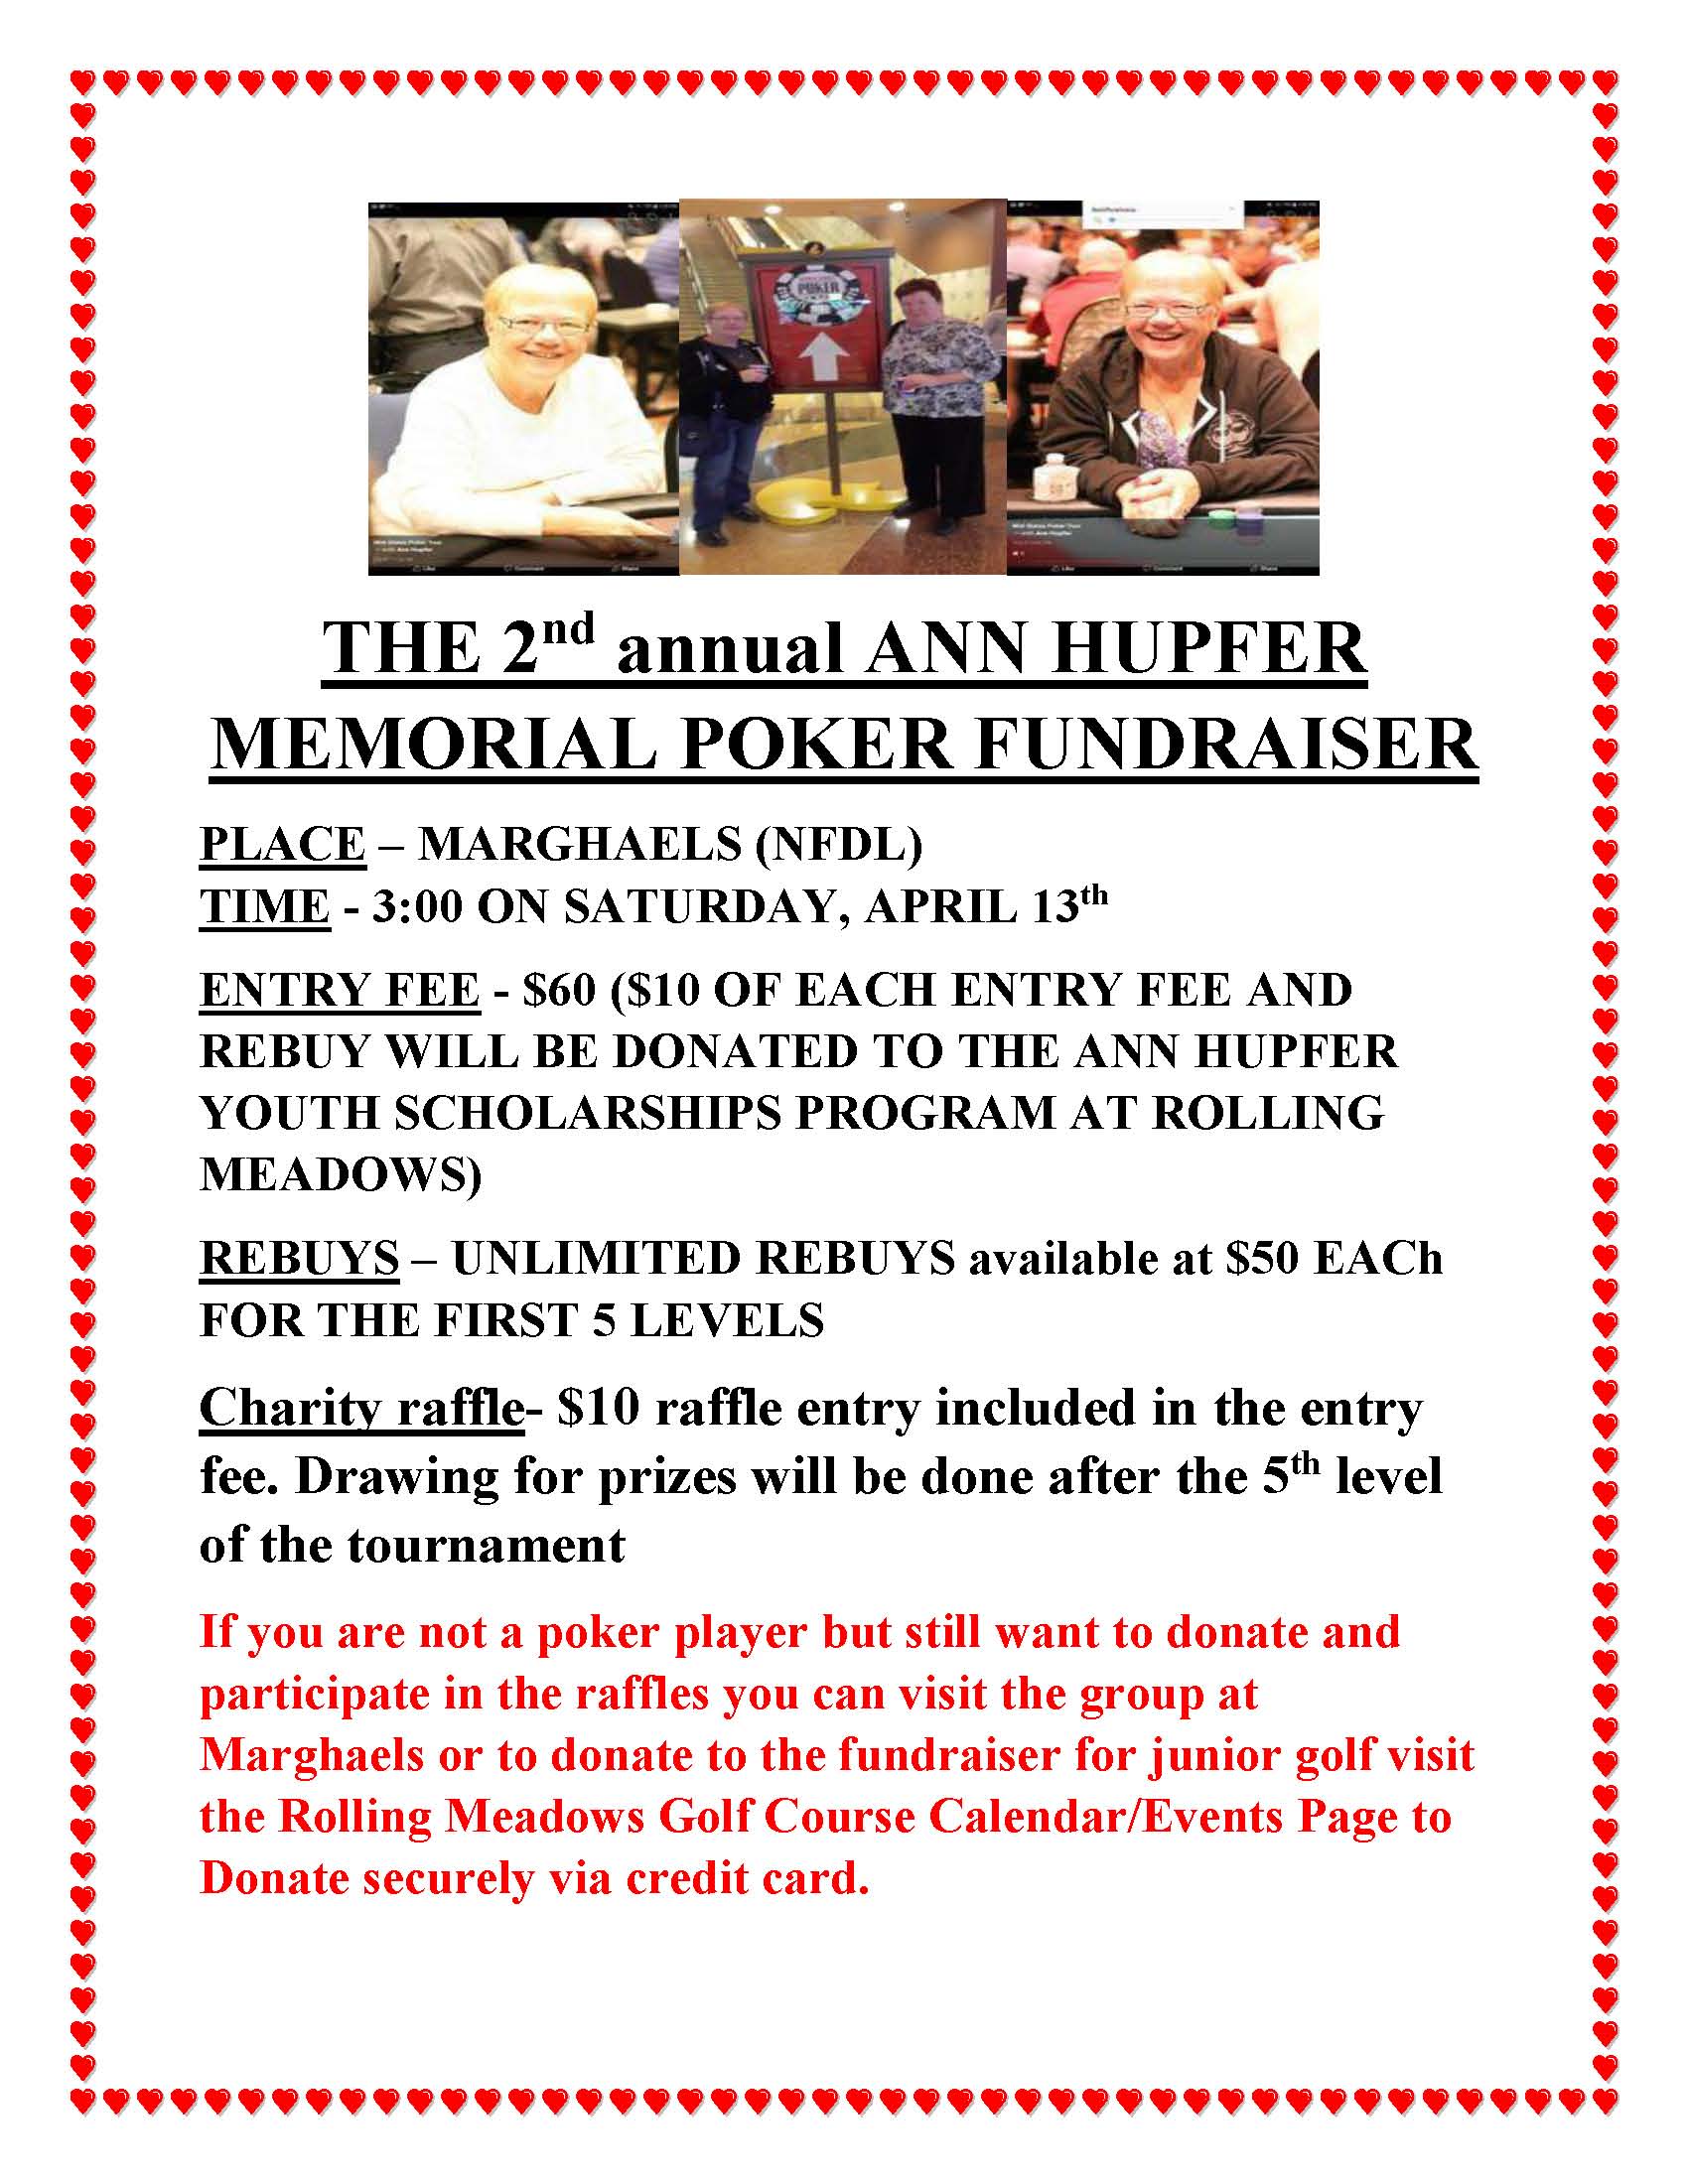 The 2nd Annual Ann Hupfer Poker Tournament Fundraiser